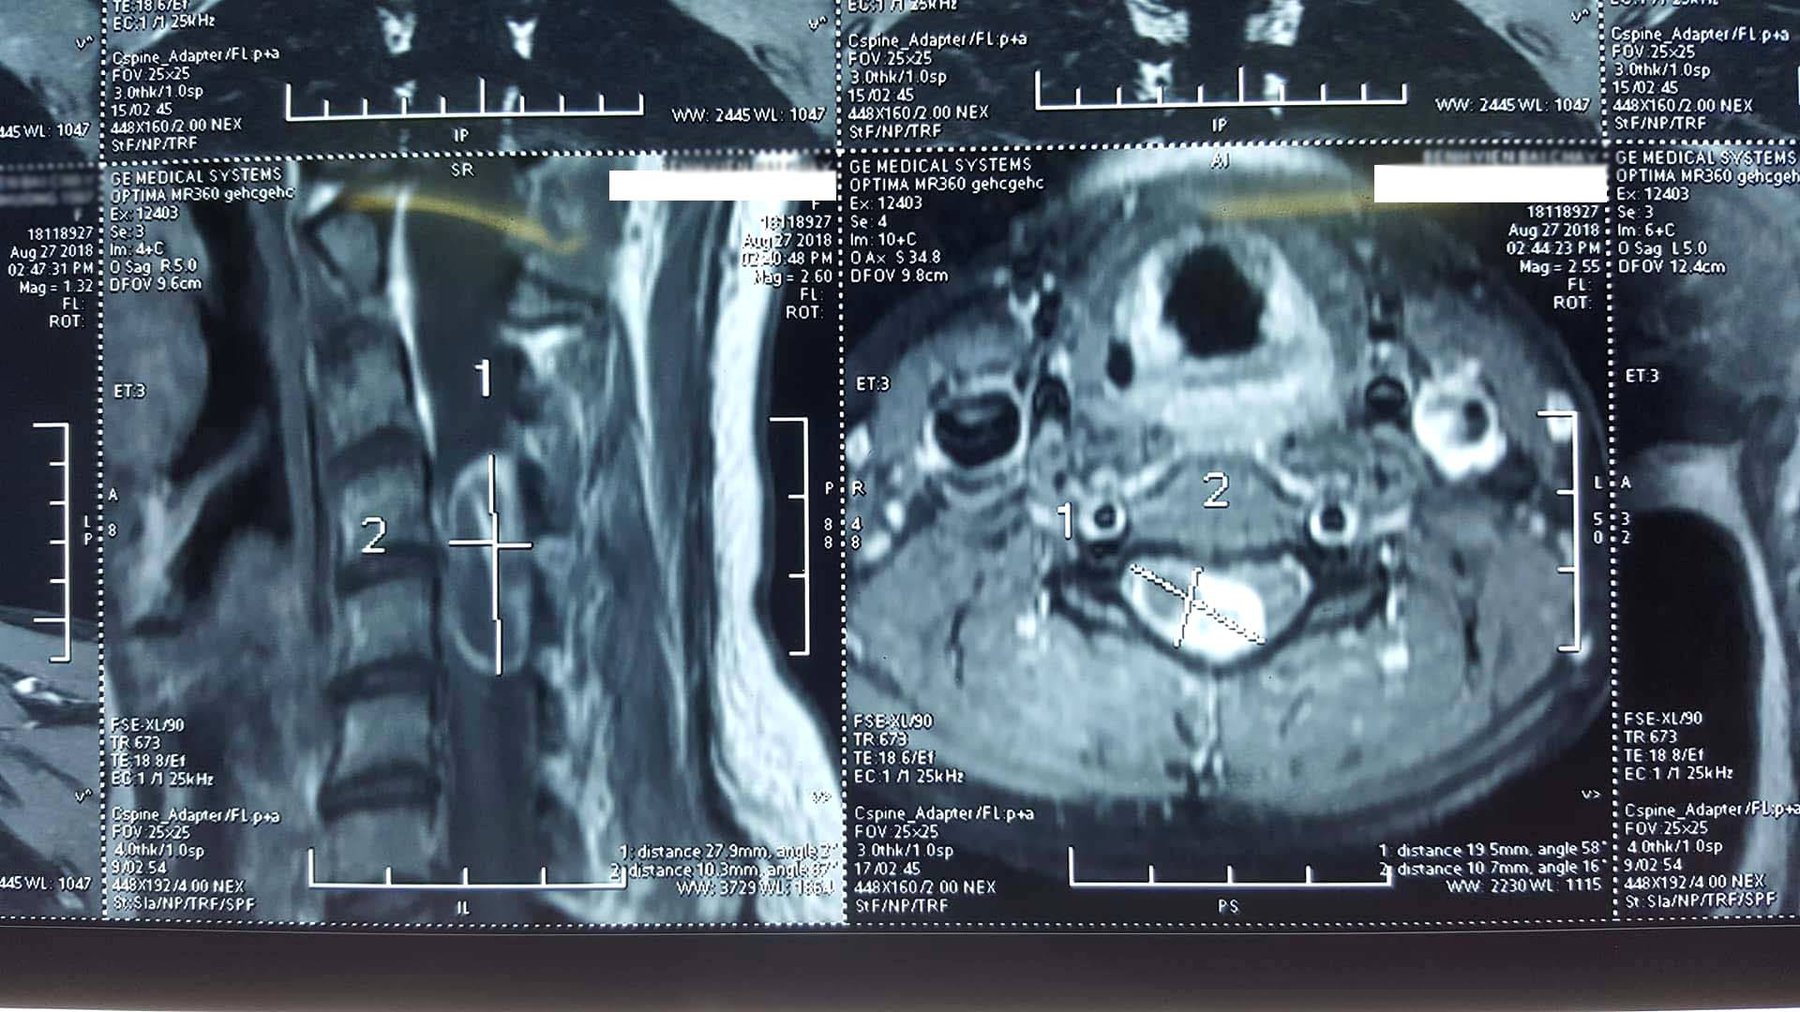 Quy trình chụp cộng hưởng từ cột sống cổ không tiêm thuốc đối quang từ - ảnh 3